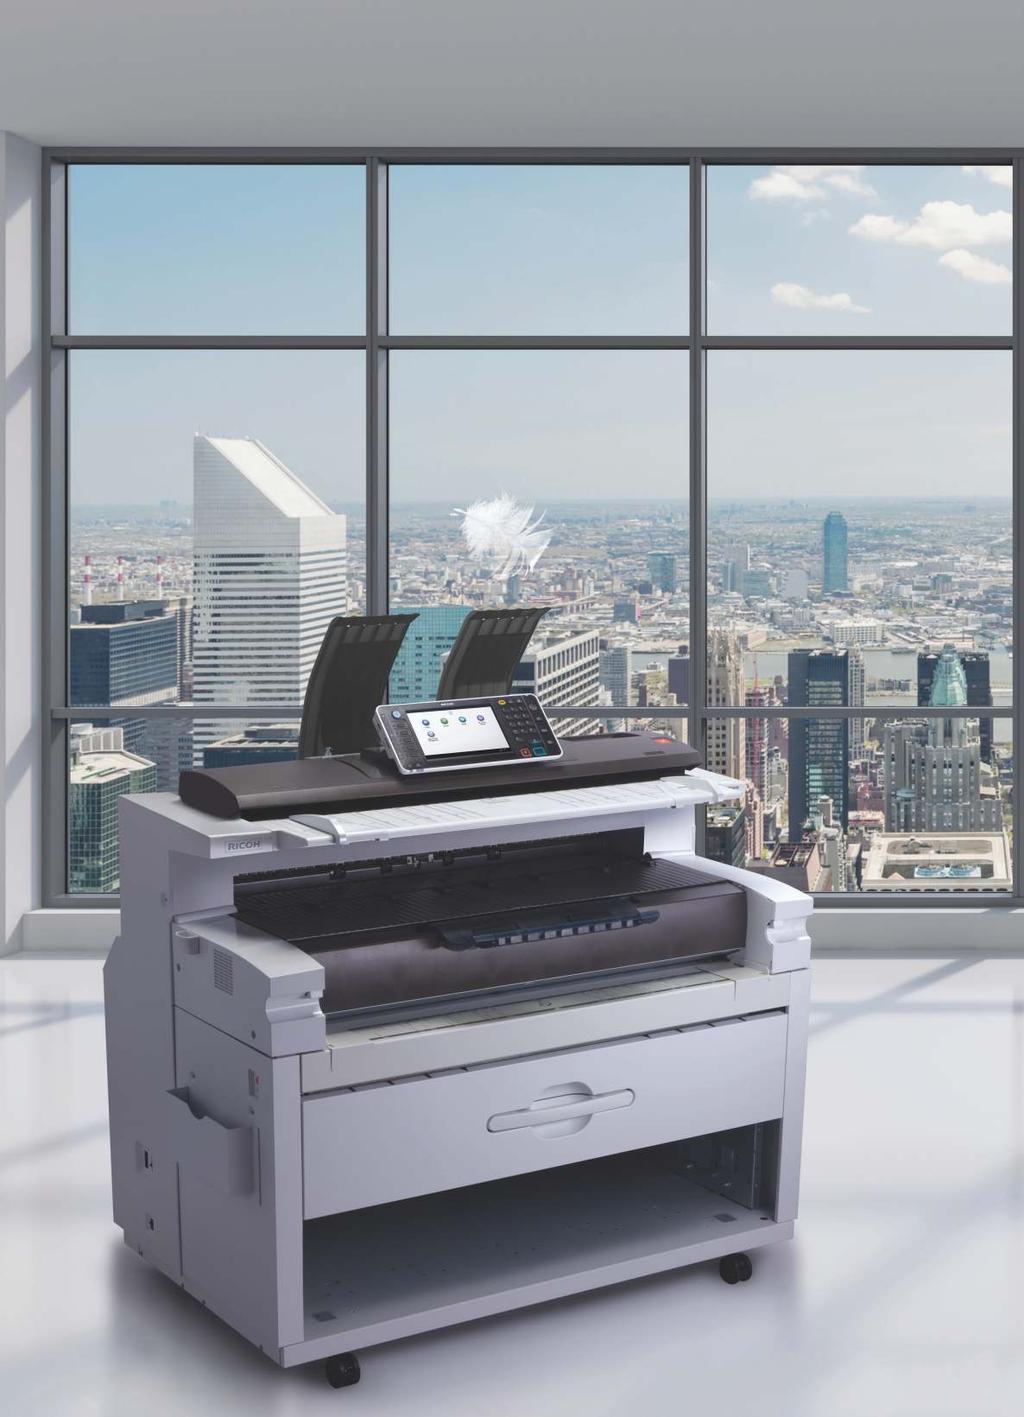 Spolehlivá multifunkční tiskárna pro malé a střední pracovní skupiny. Chcete rychlý výstup s vysokým rozlišením a velmi vysokou spolehlivostí?